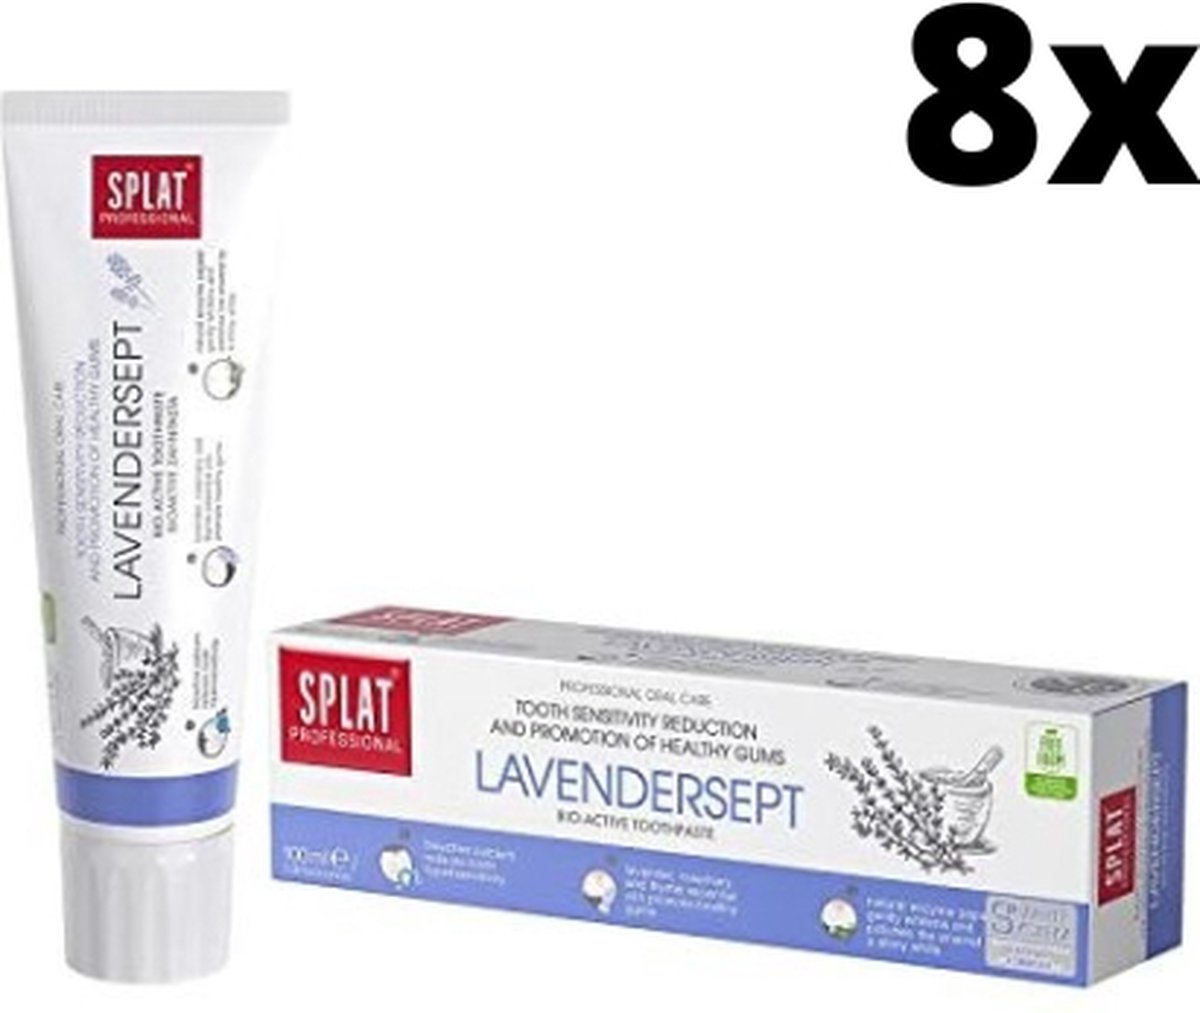 Splat Professional Lavendersept Tandpasta - 8 x 100 ml - Voordeelverpakking